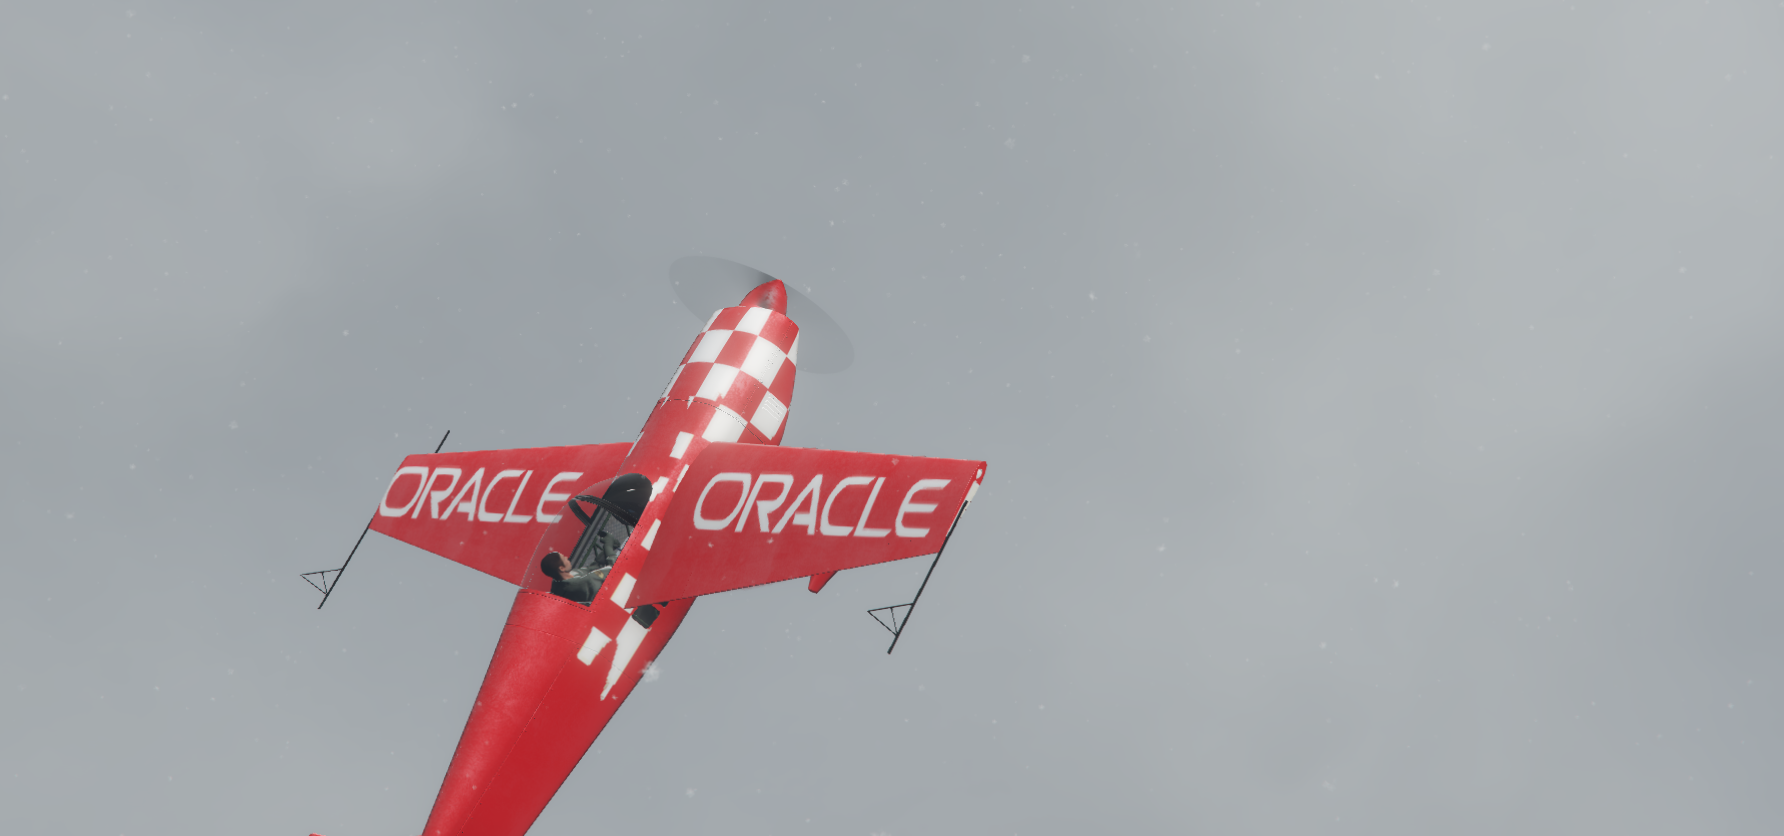 oracle stunt plane